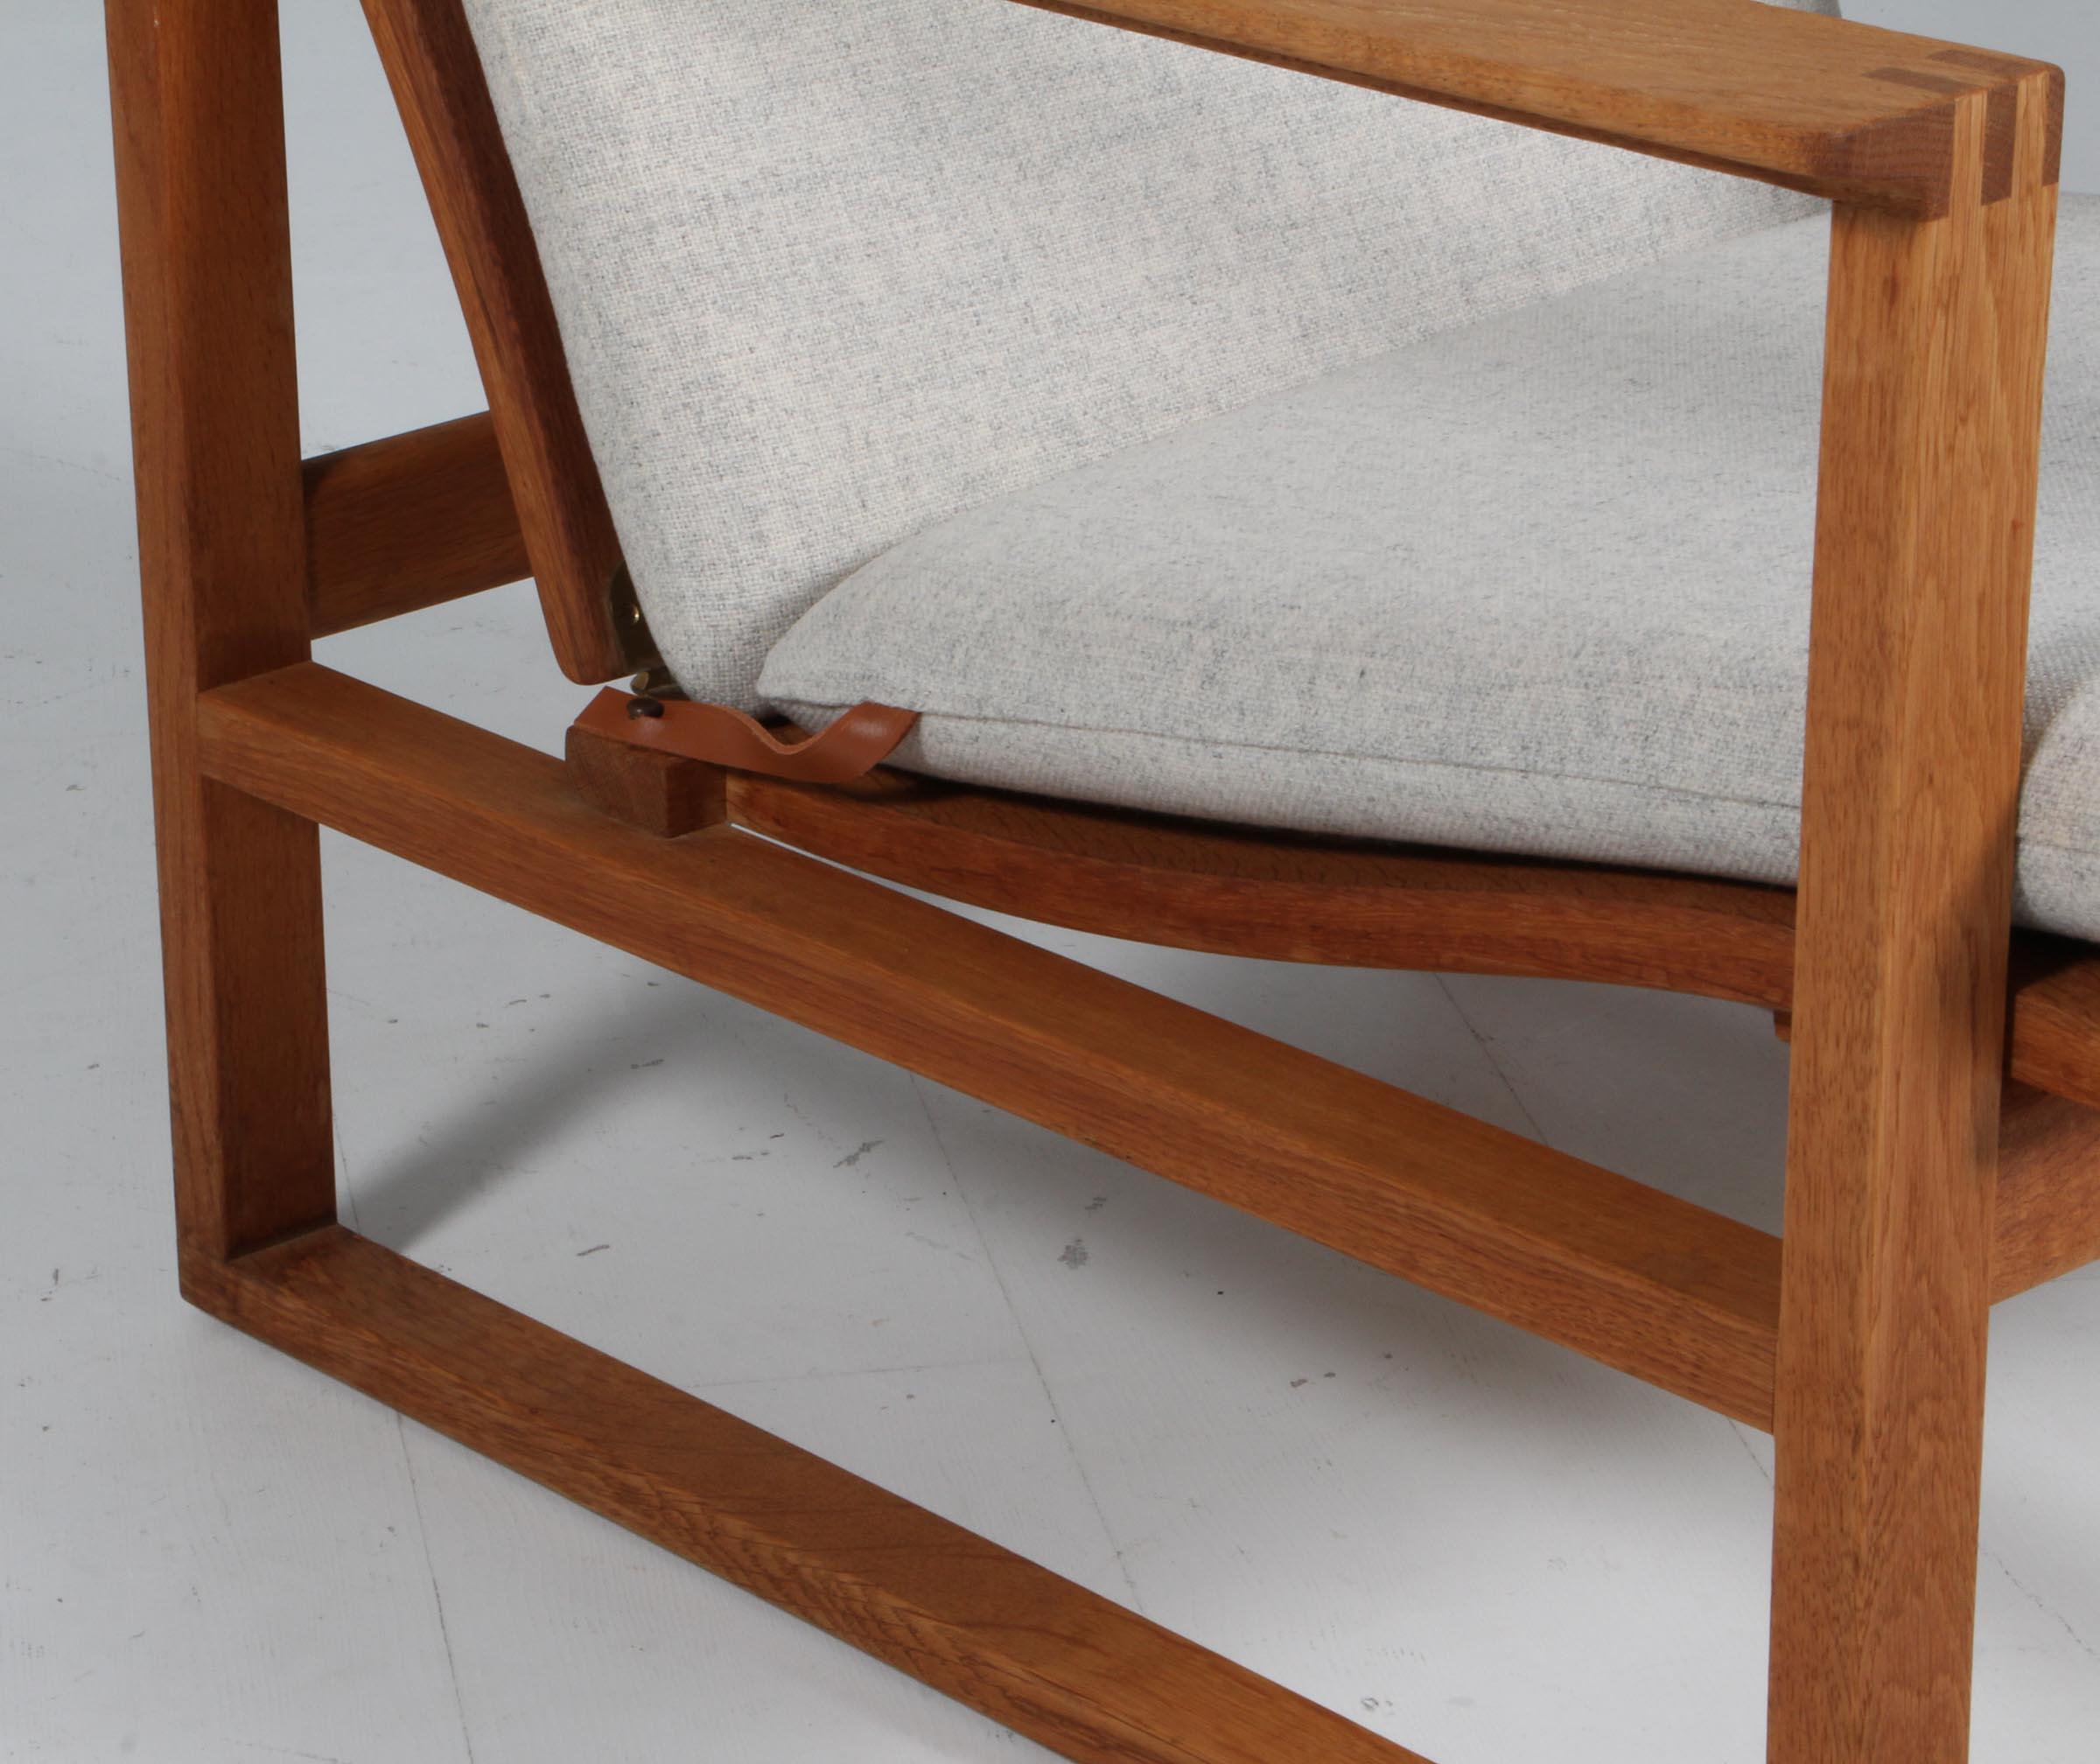 Børge Mogensen 2254 Oak Sled Chair, 1956, Dänemark (Dänisch)